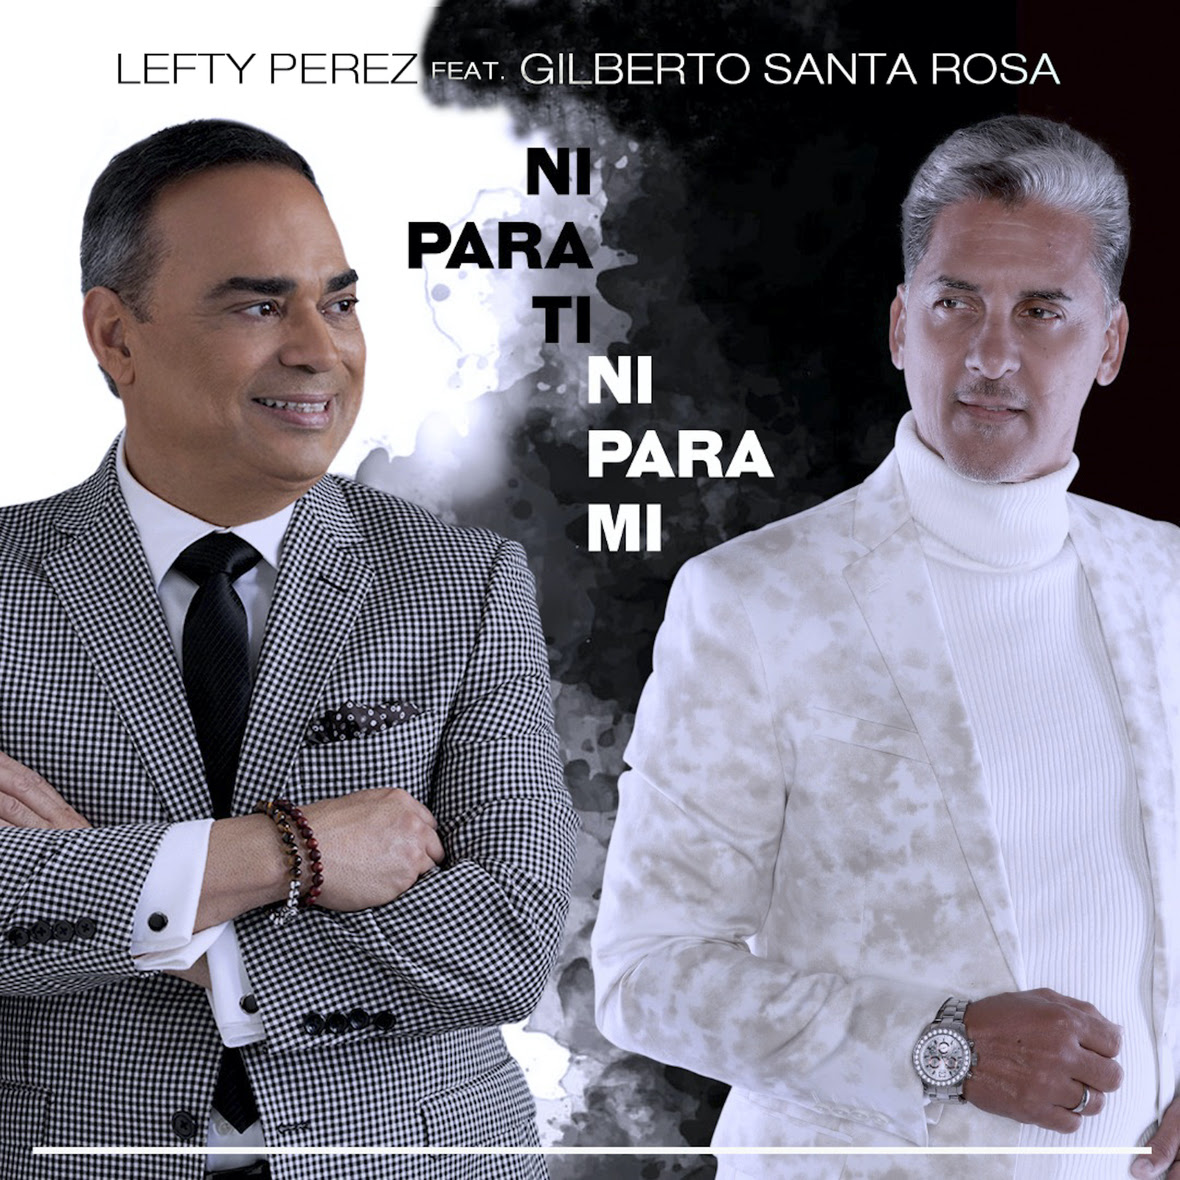 LEFTY PEREZ feat. GILBERTO SANTA ROSA - Ni Para Ti Ni Para Mi